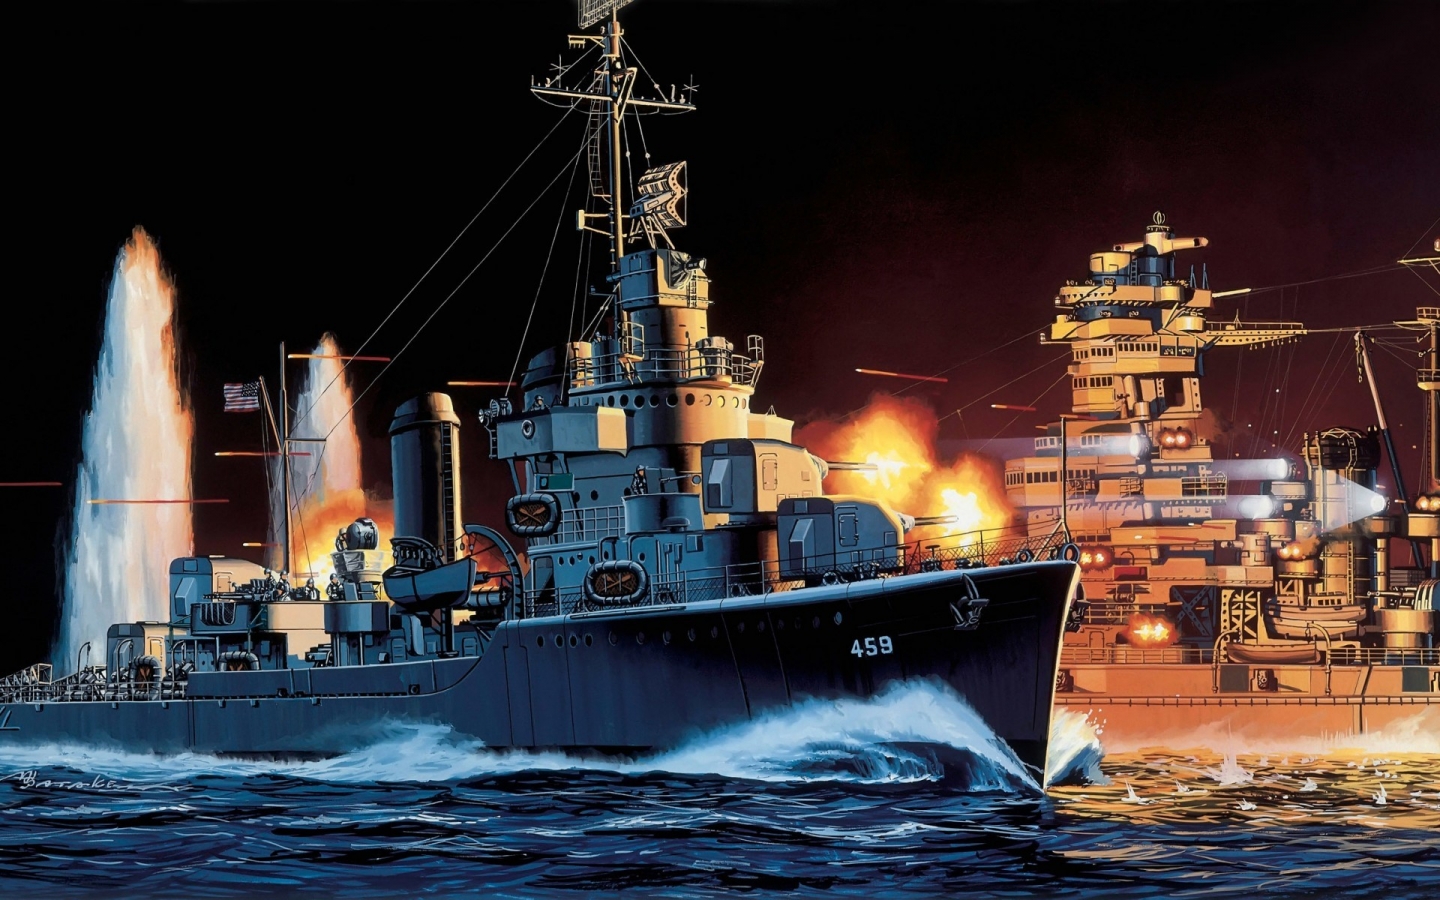 USS Laffey for 1440 x 900 widescreen resolution